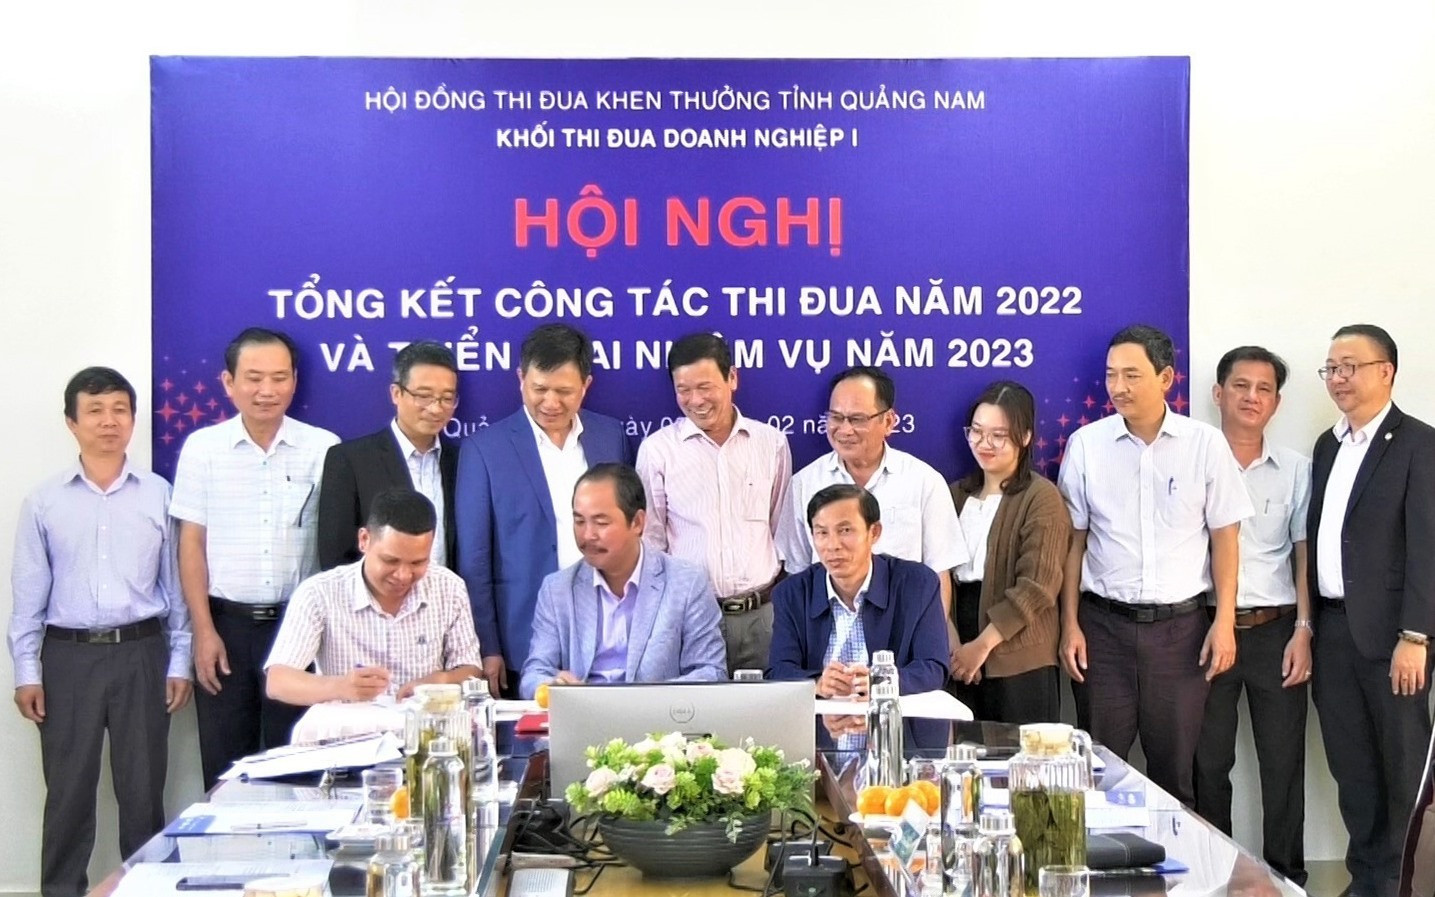 Các doanh nghiệp đăng ký giao ước thi đua năm 2023 với sự chứng kiến của đại diện Hội đồng Thi đua - Khen thưởng tỉnh Quảng Nam.